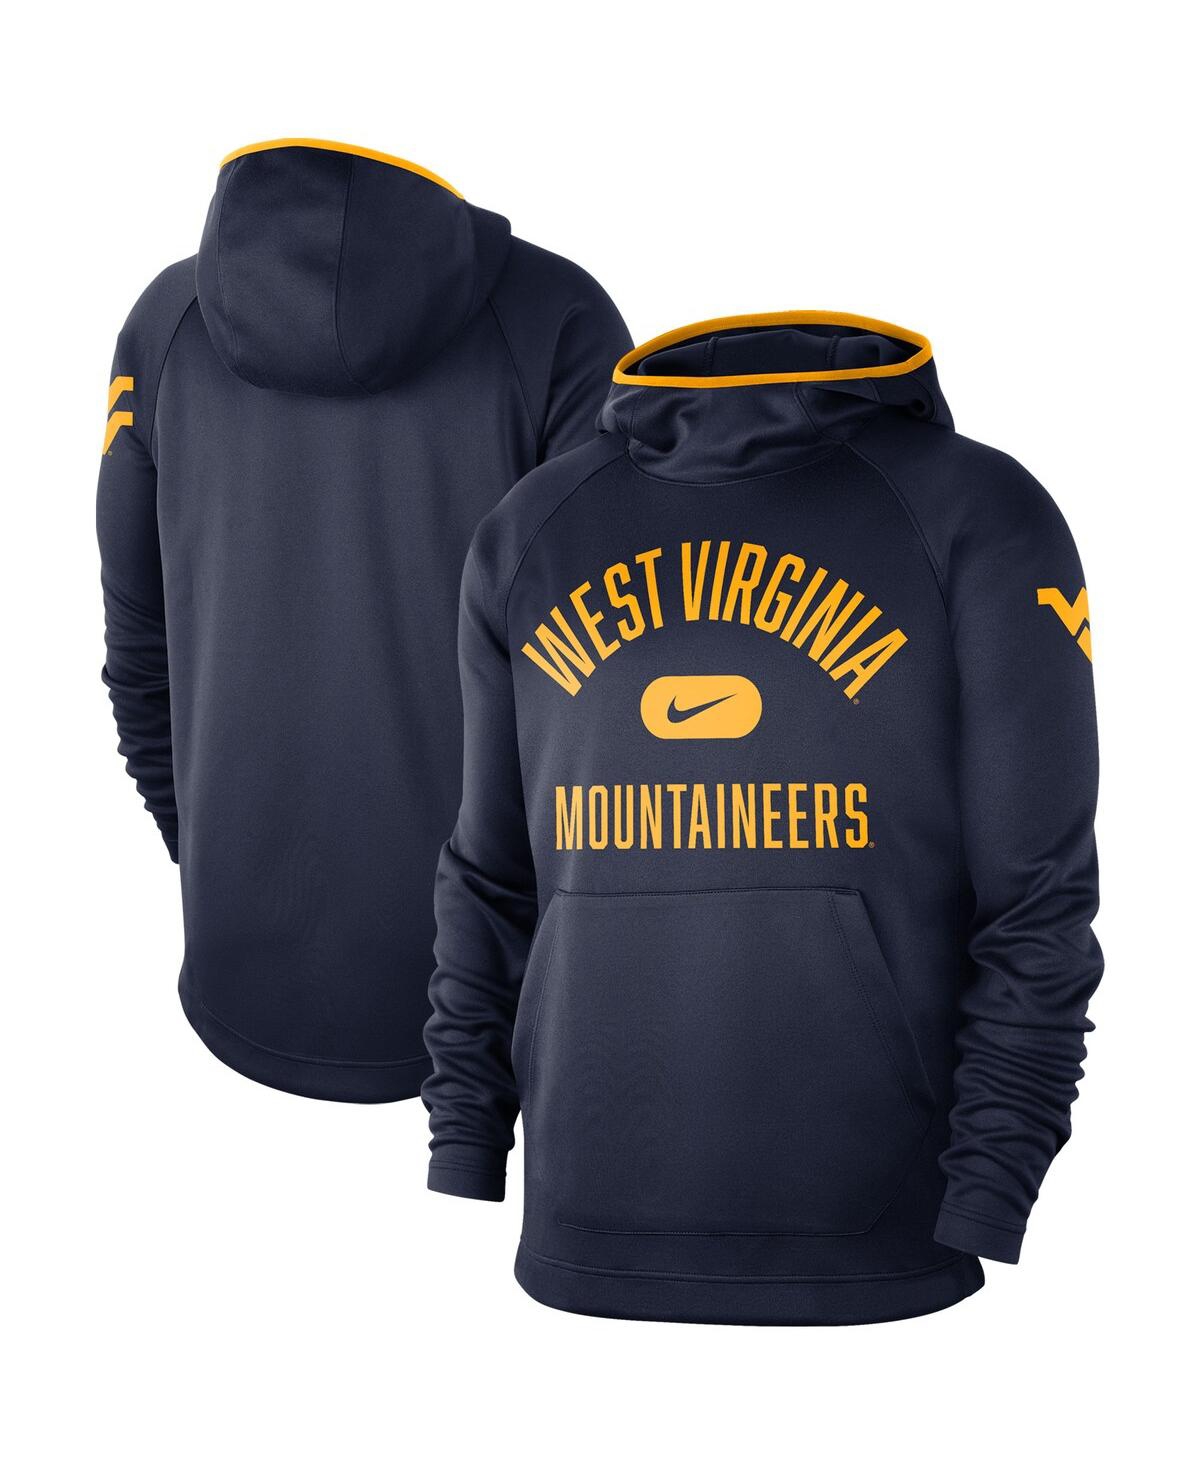 Shop Nike Men's Navy West Virginia Mountaineers Basketball Spotlight Performance Raglan Pullover Hoodie